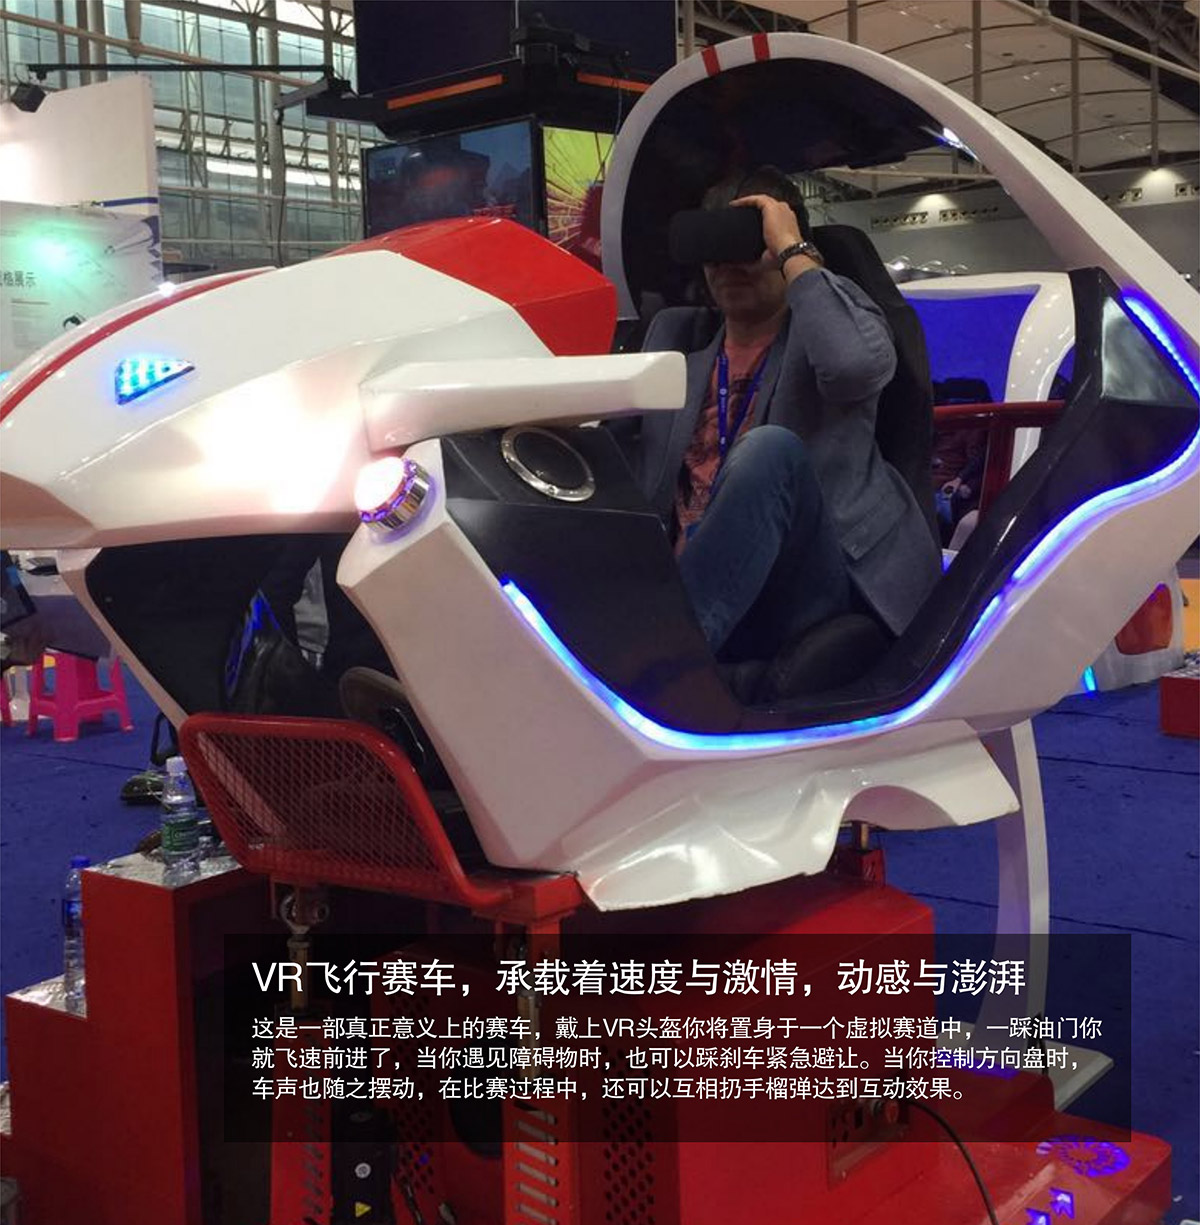 互动电影VR飞行虚拟赛车速度与激情动感澎湃.jpg